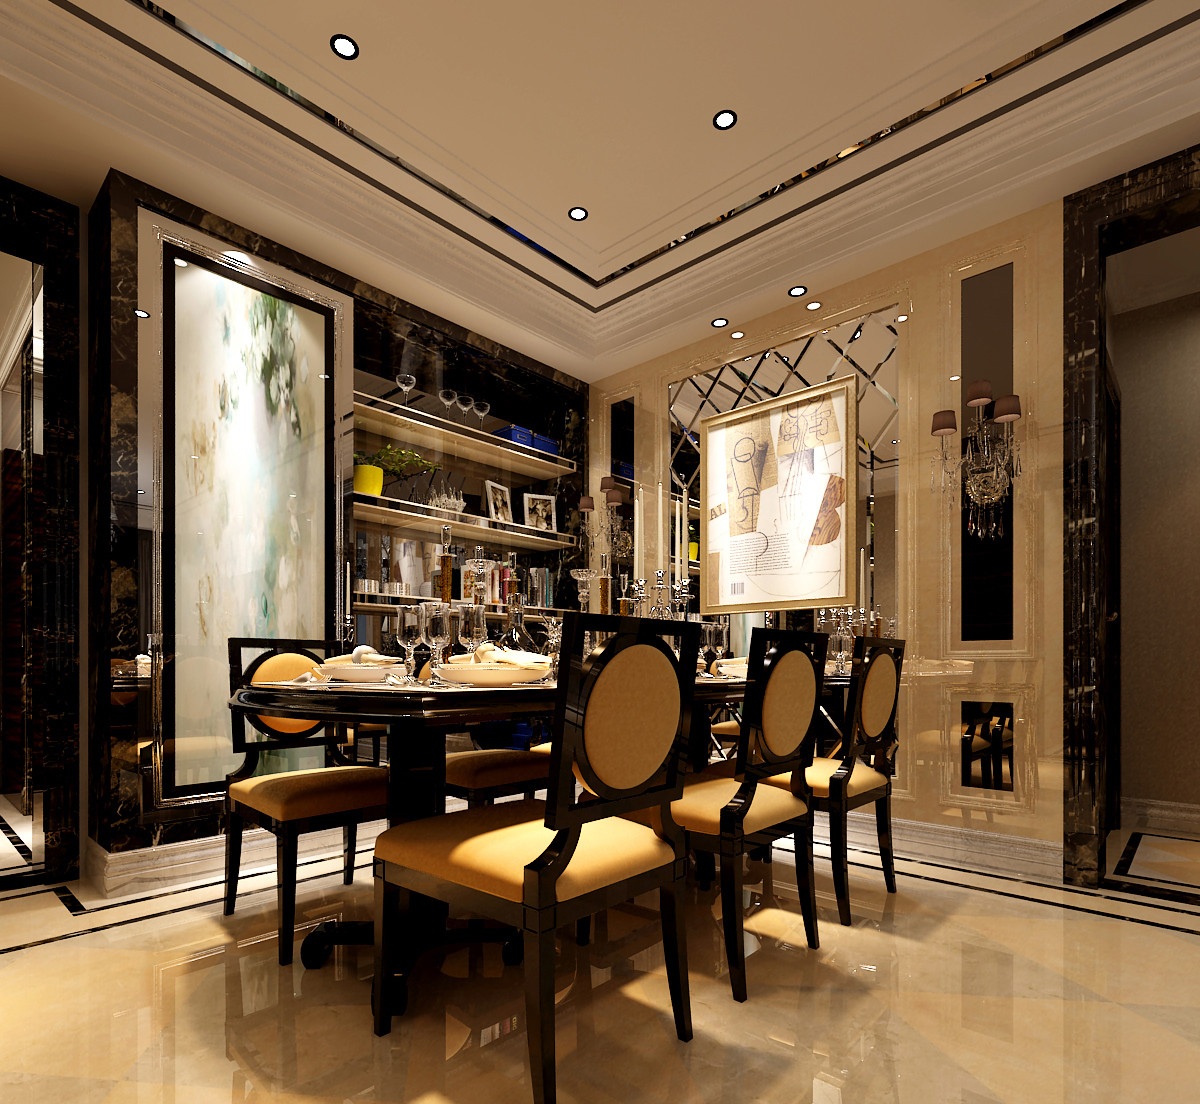 简约 混搭 现代 高度国际 餐厅图片来自重庆高度国际装饰工程有限公司在黑色华尔兹的分享